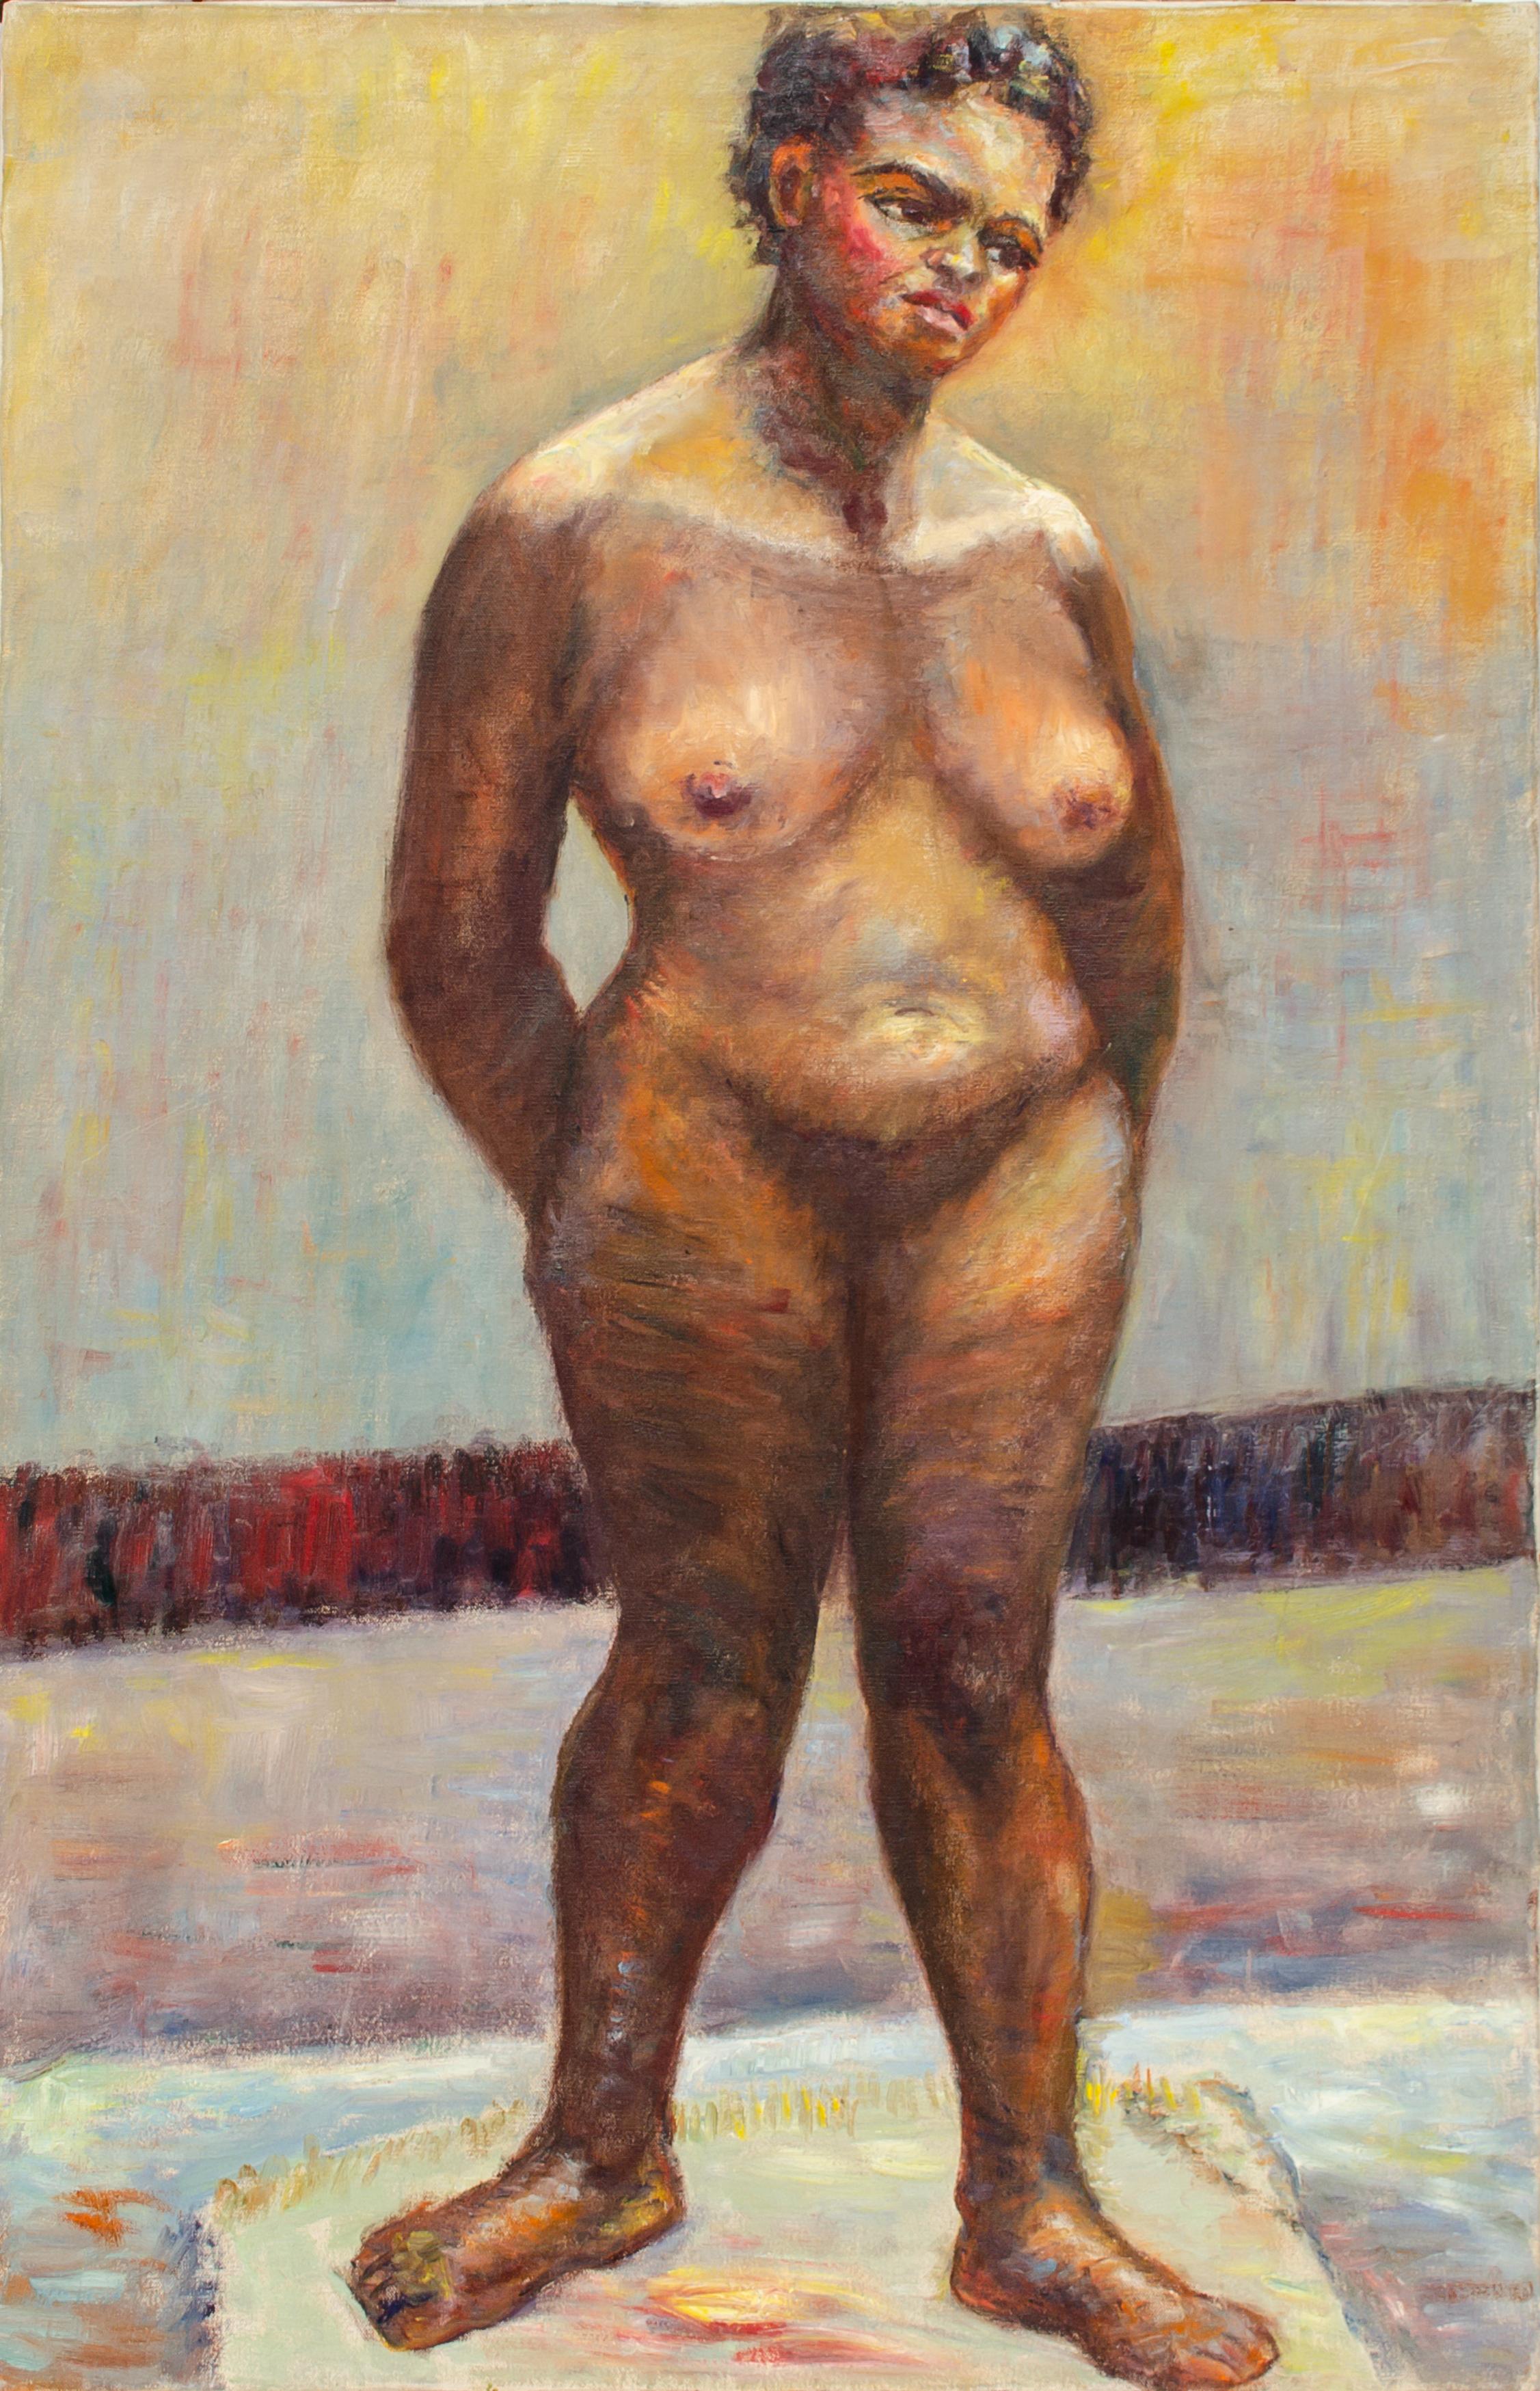 Peinture moderniste de figures nues par Alma Davies, élève de Raphael Soyer